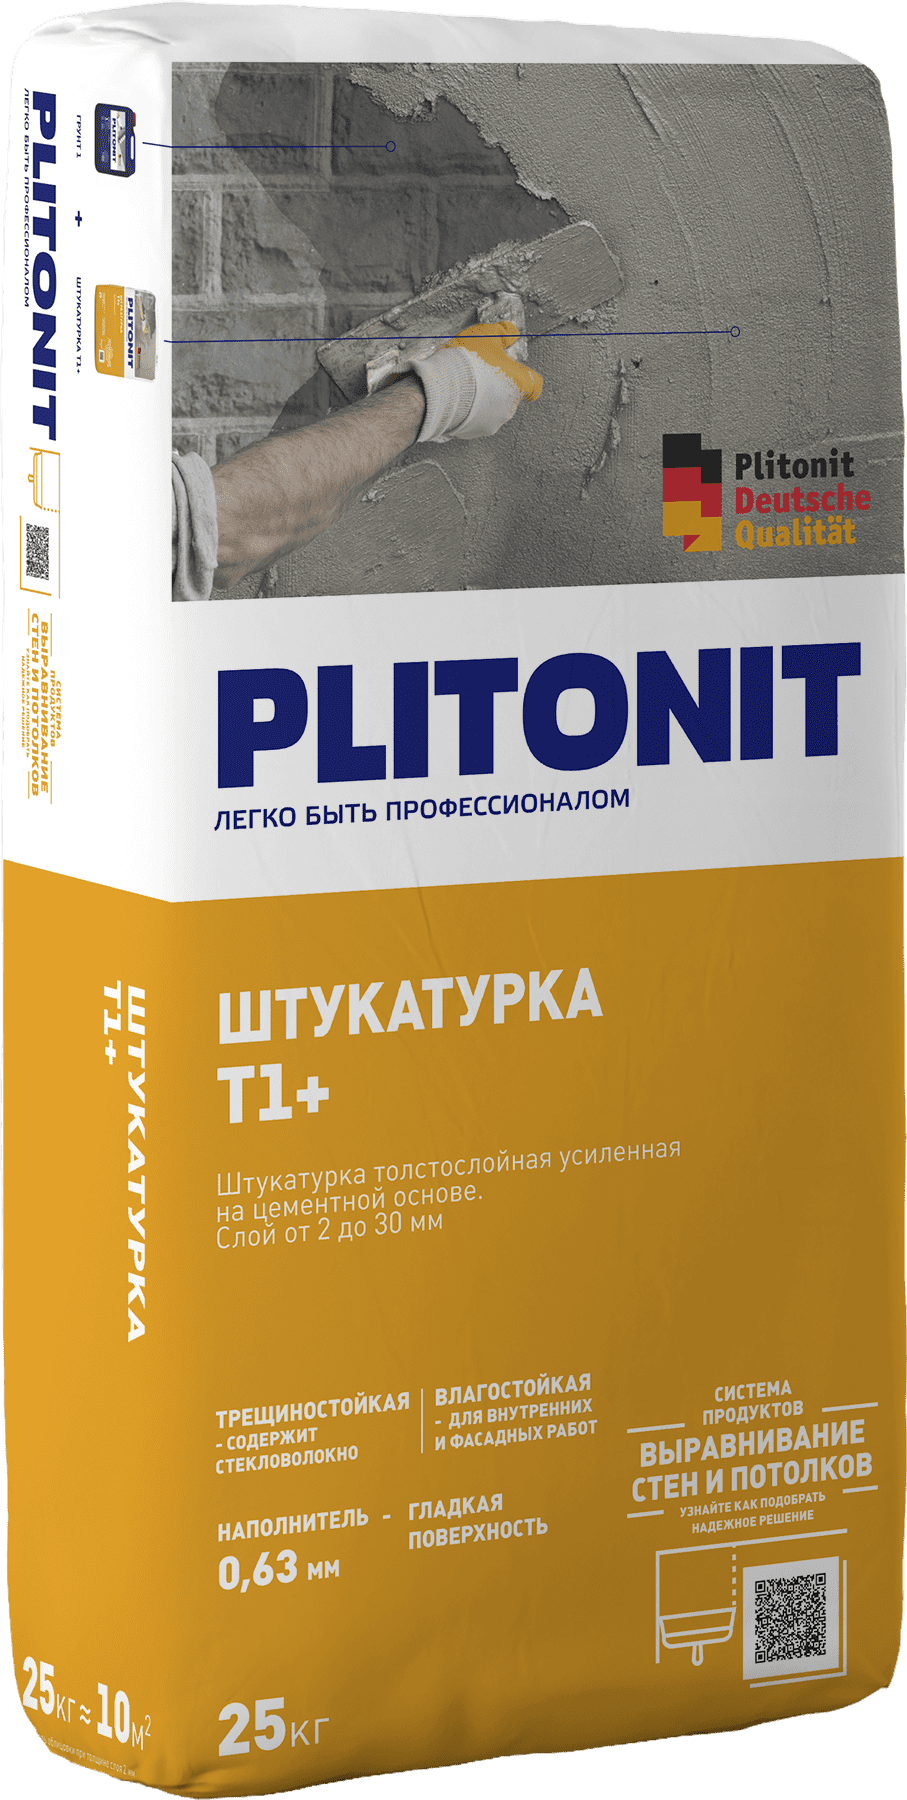 подробно PLITONIT Т1+ -4 штукатурка  